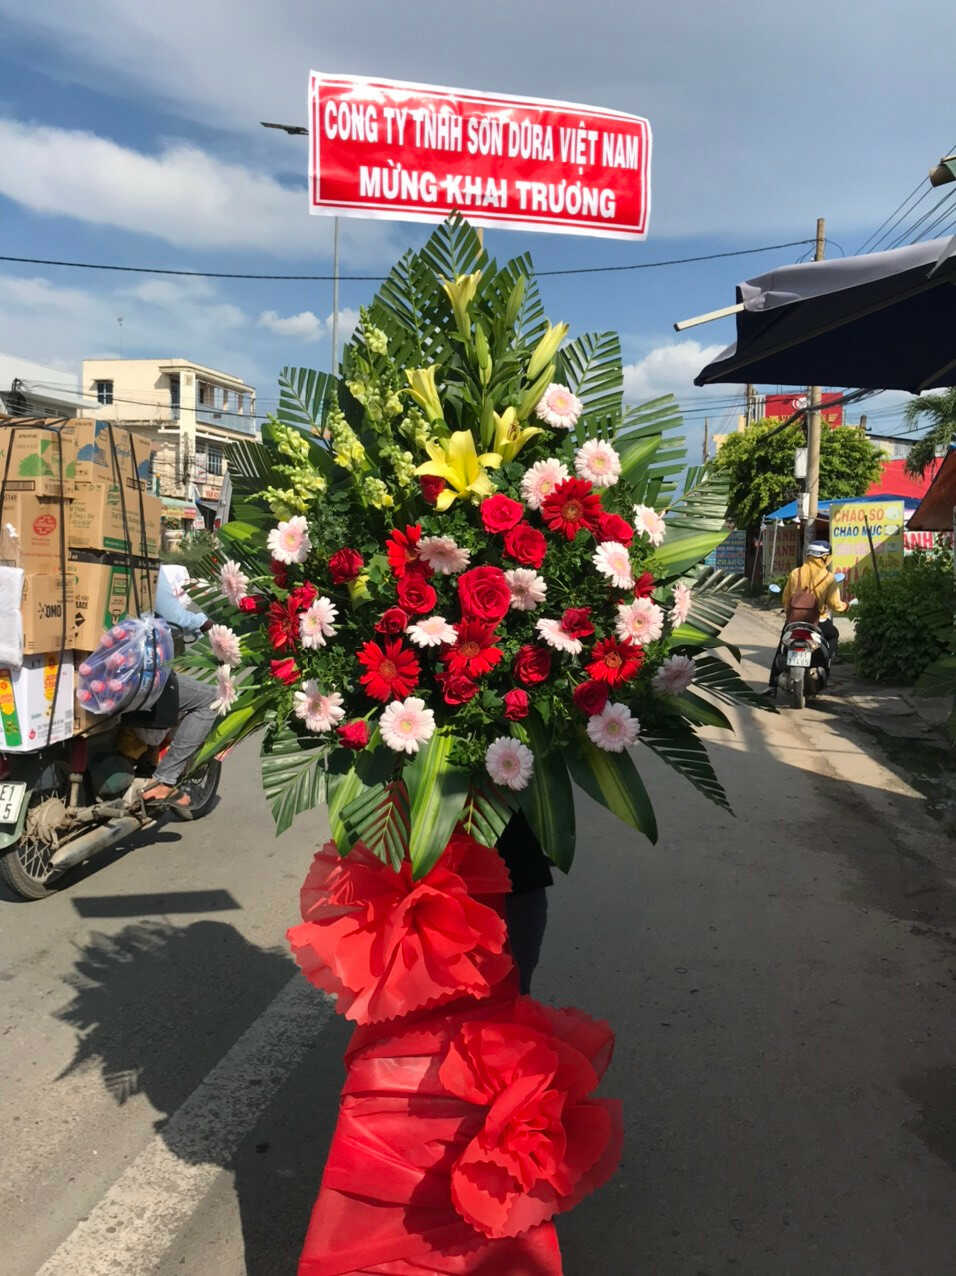 Mẫu Hoa khai trương tại điện hoa quận Hai Bà Trưng, Hà Nội